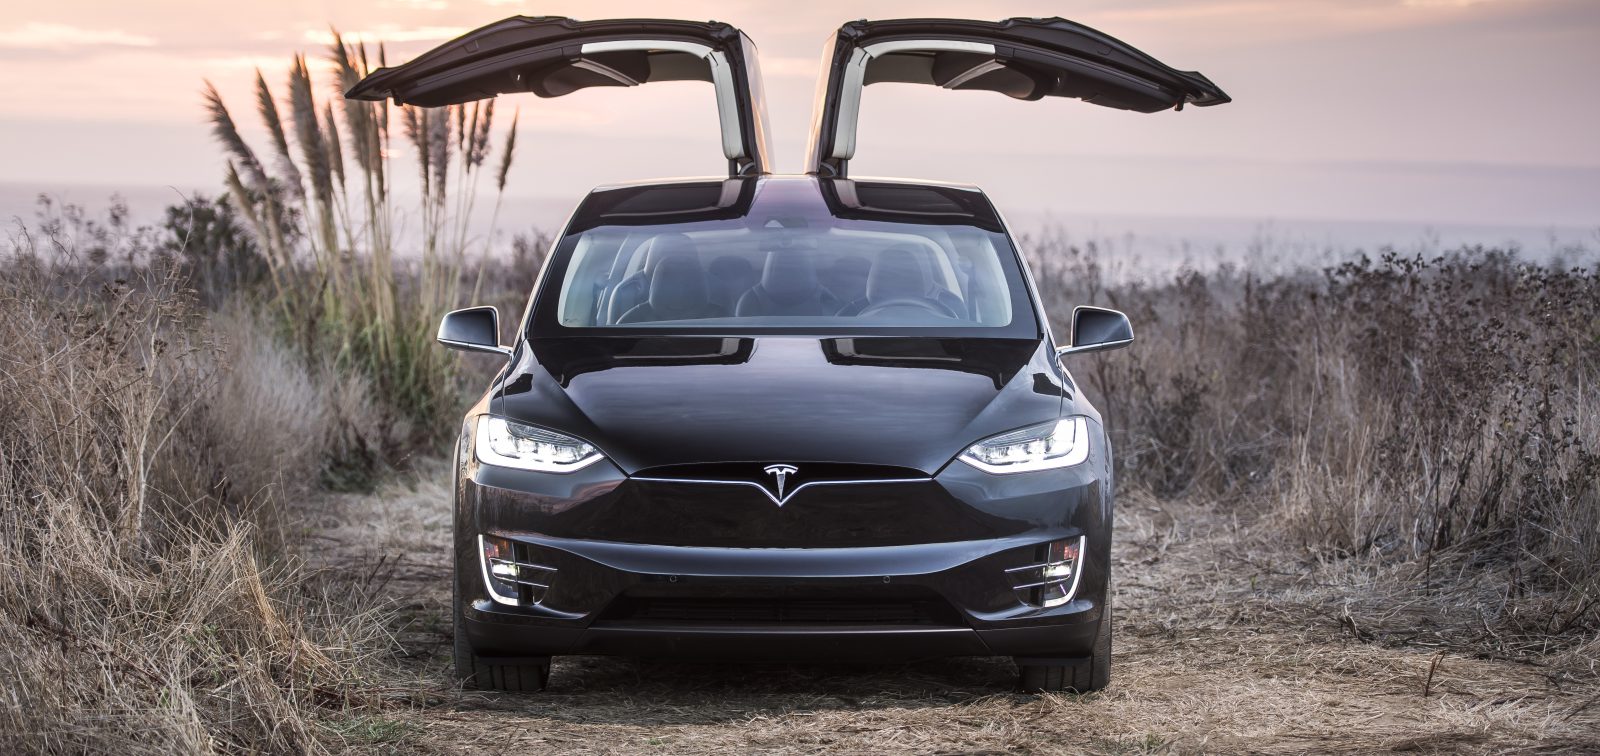 Tesla начнет производство нового электромобиля